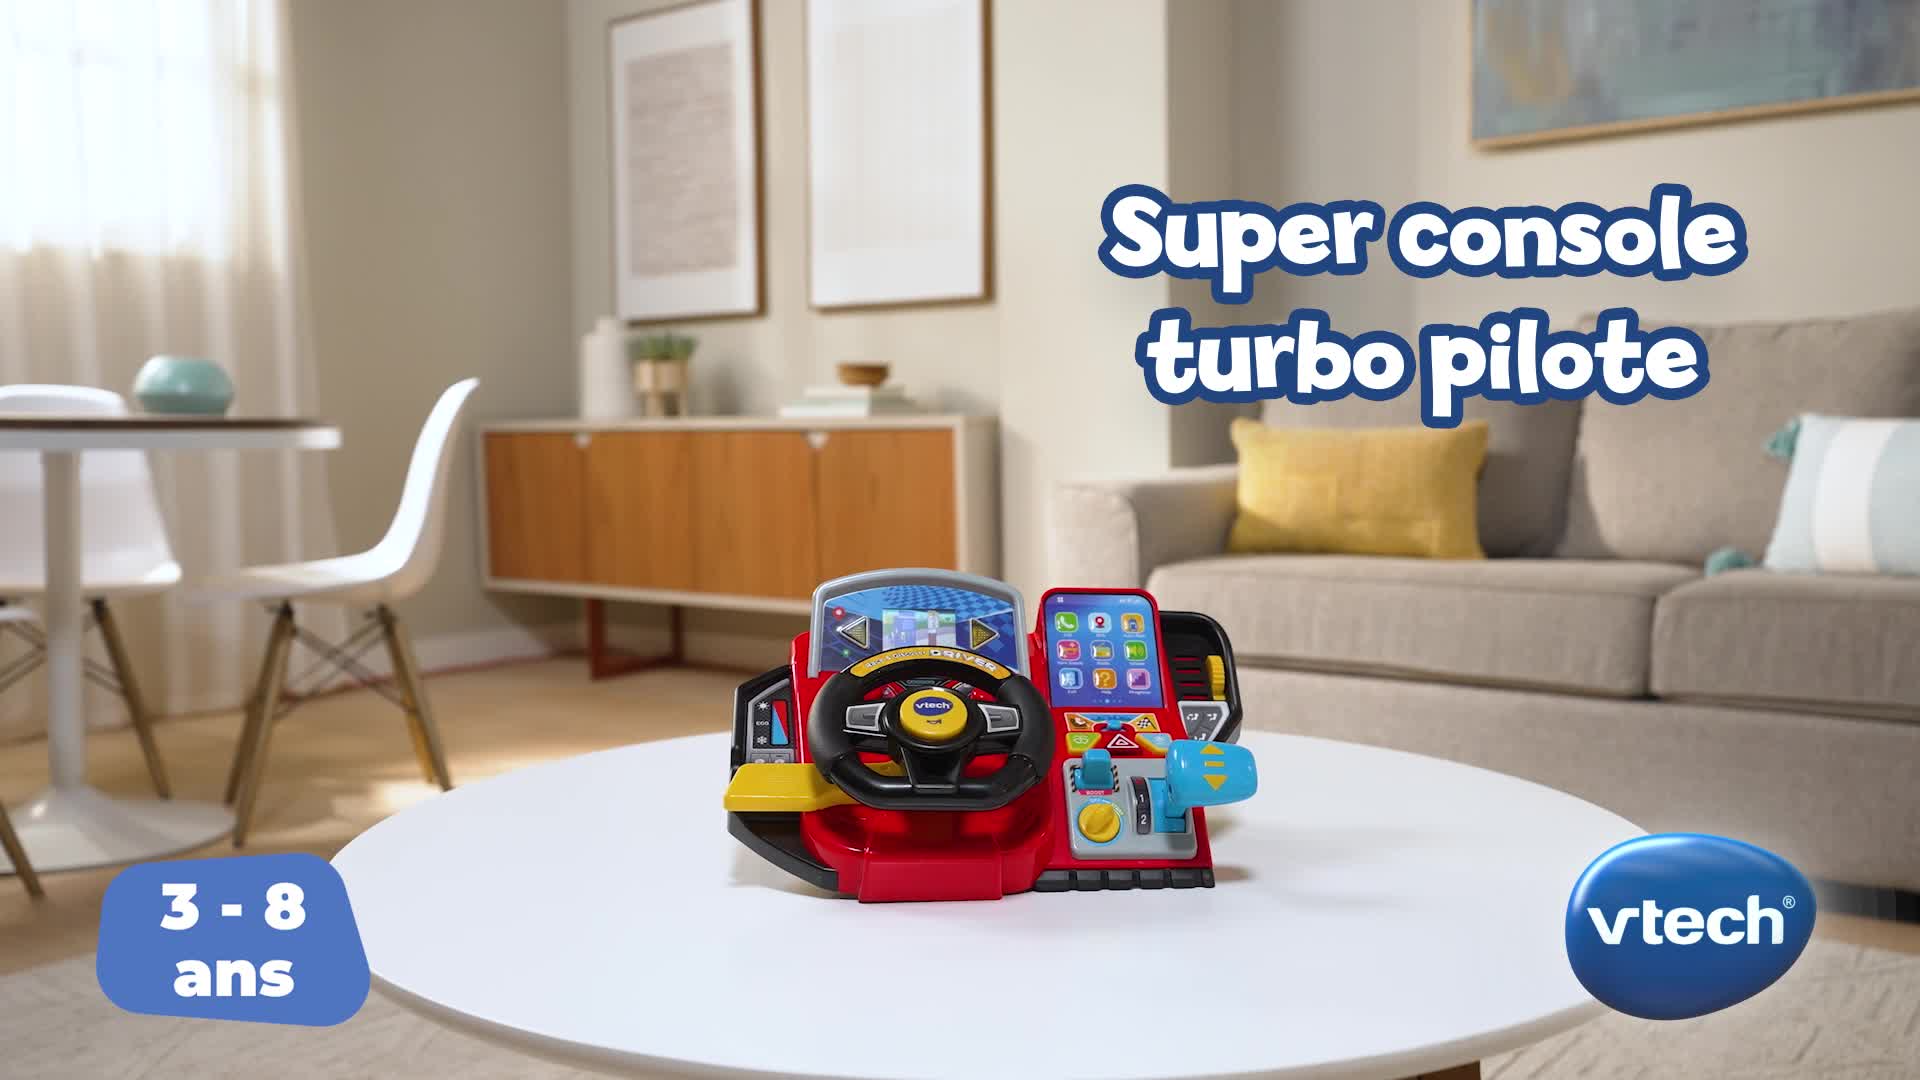 Jeu éducatif Vtech Super console turbo pilote - Autre jeux